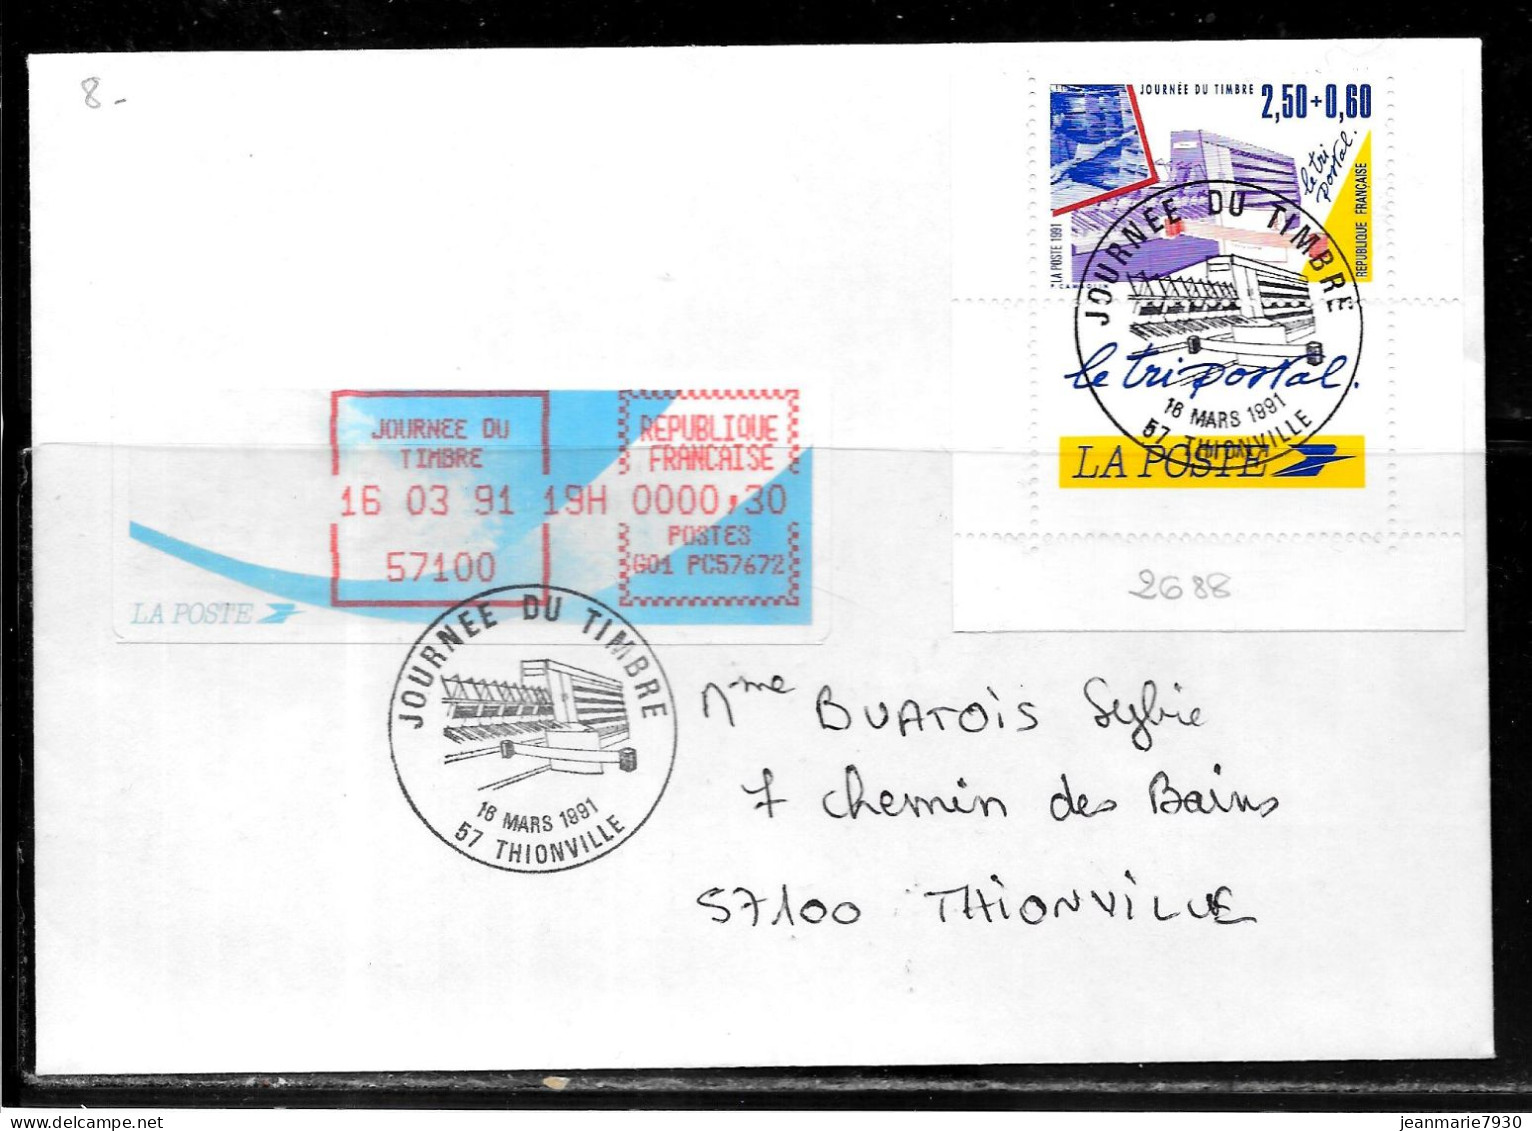 K183 - N° 2688 SUR LETTRE DE THIONVILLE DU 16/03/91 - JOURNEE DU TIMBRE - VIGNETTE D'AFFRANCHISSEMENT - Cachets Commémoratifs